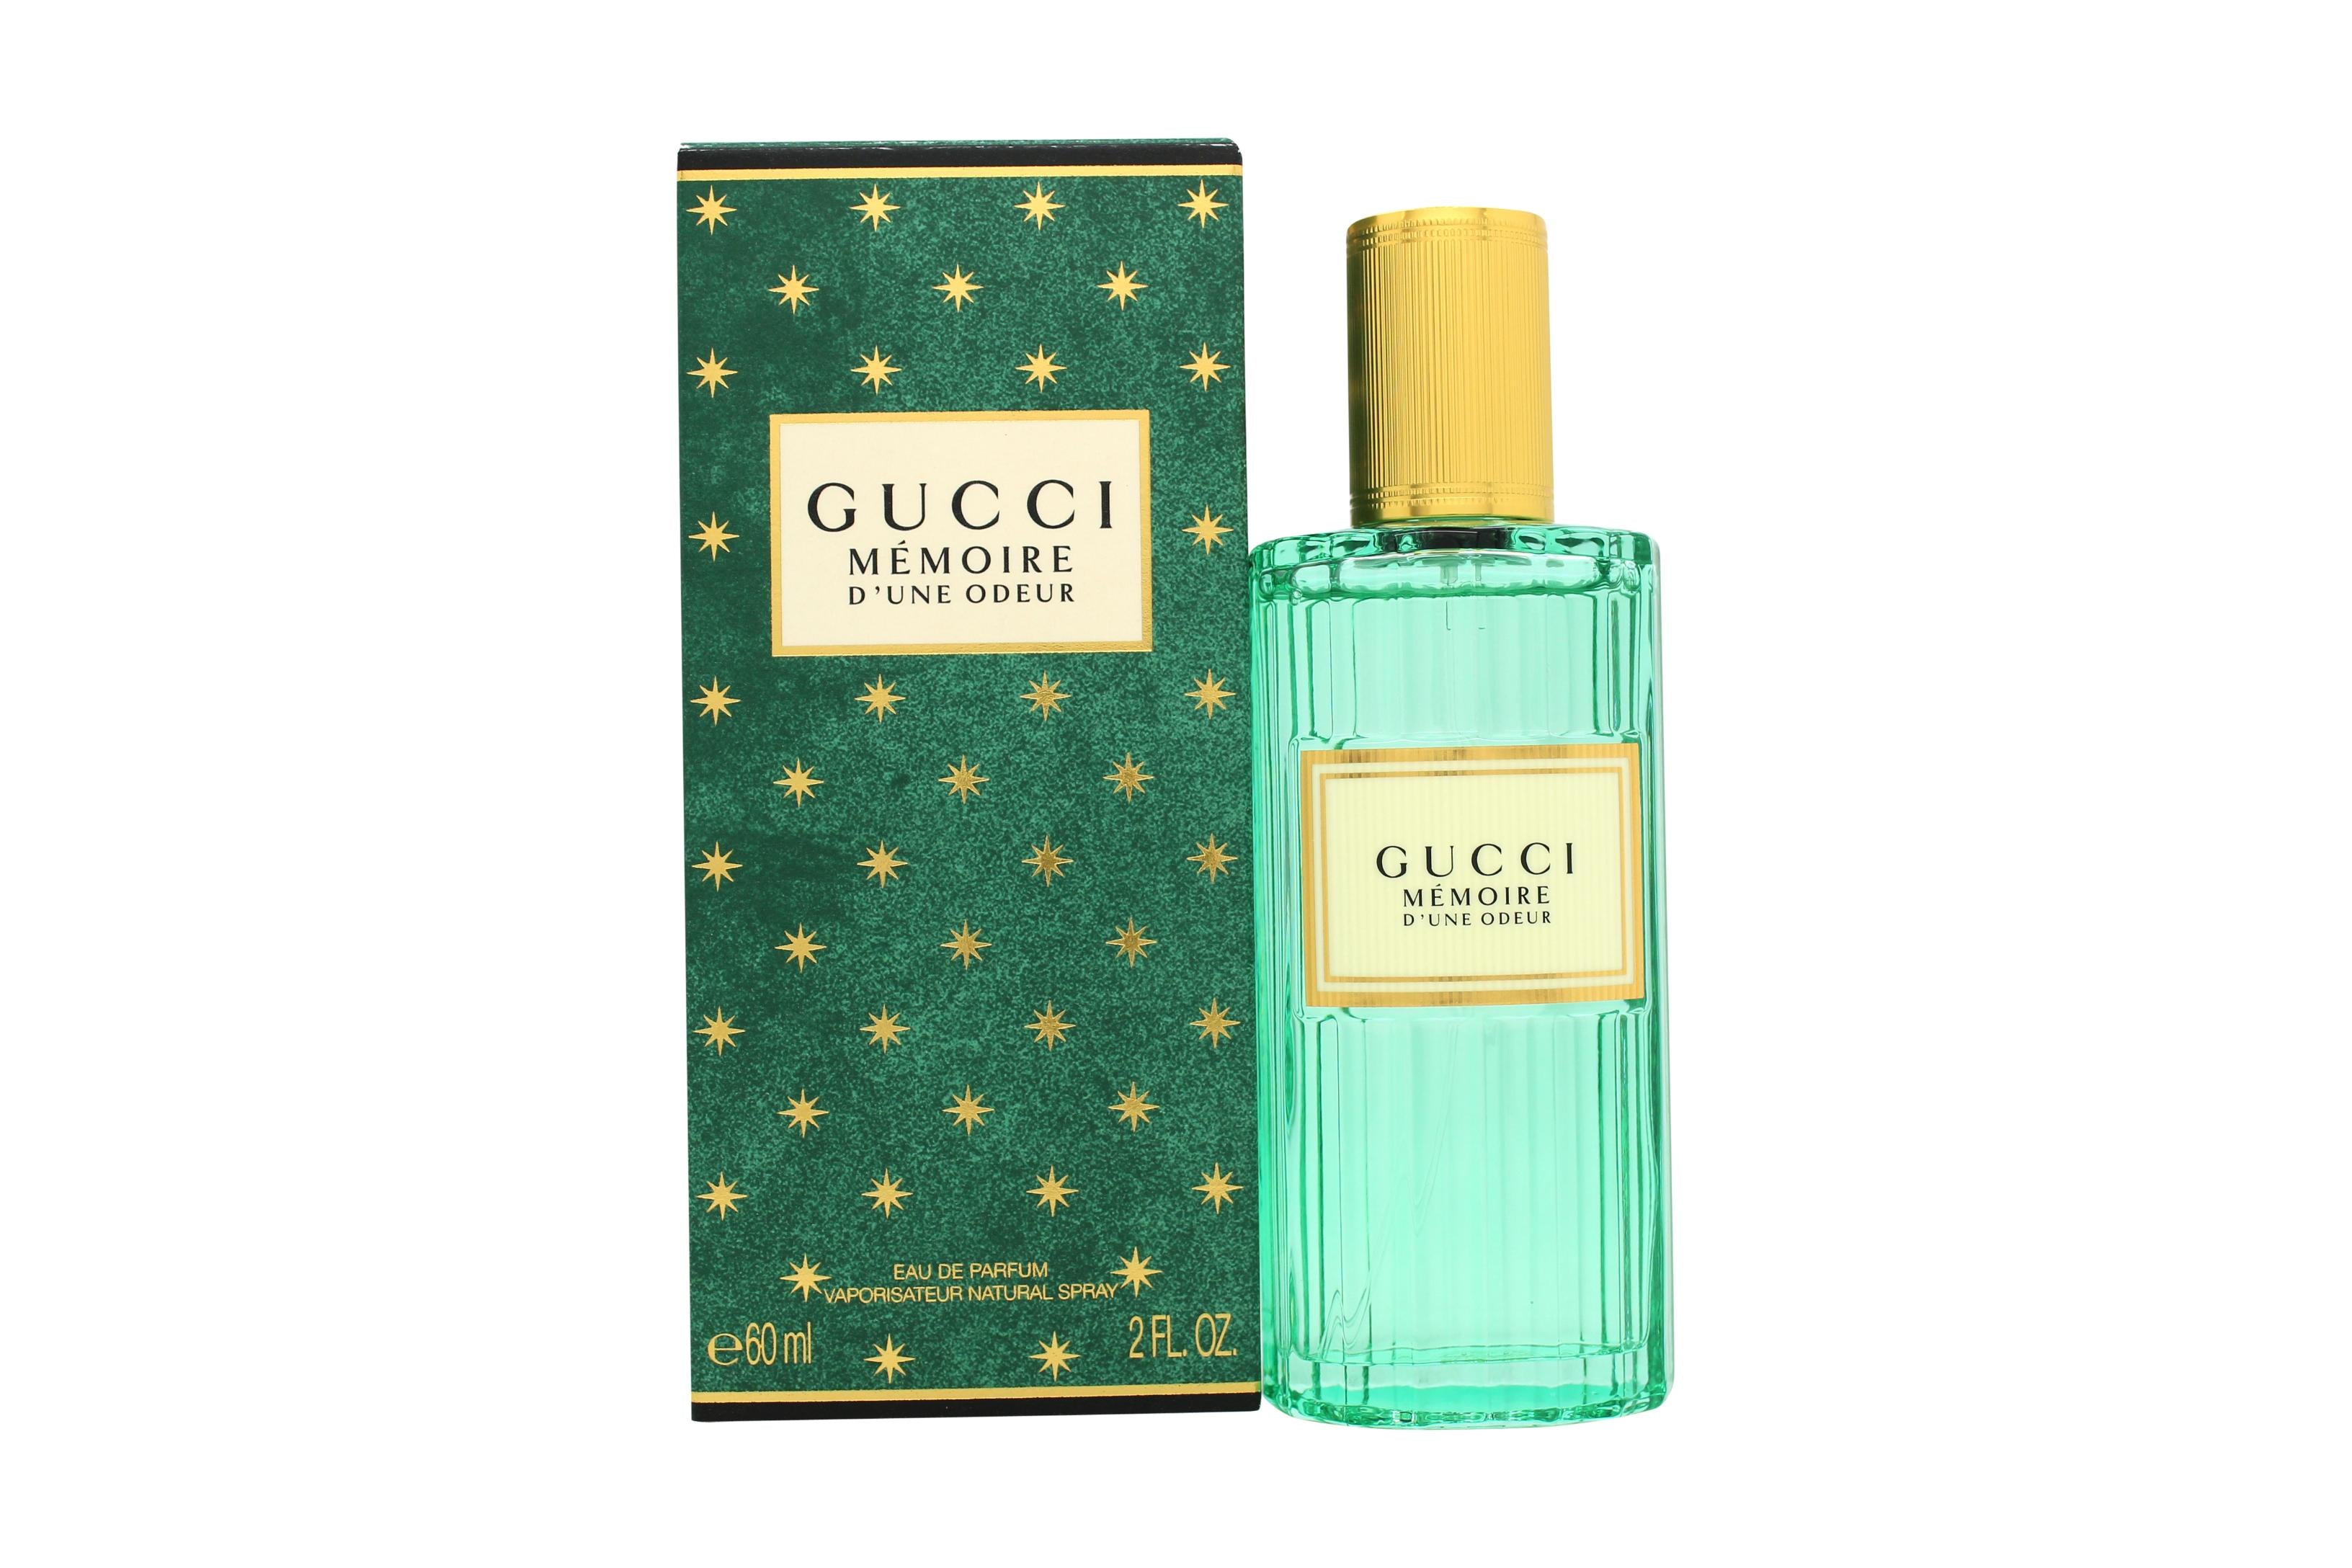 View Gucci Mémoire dune Odeur Eau de Parfum 60ml Spray information